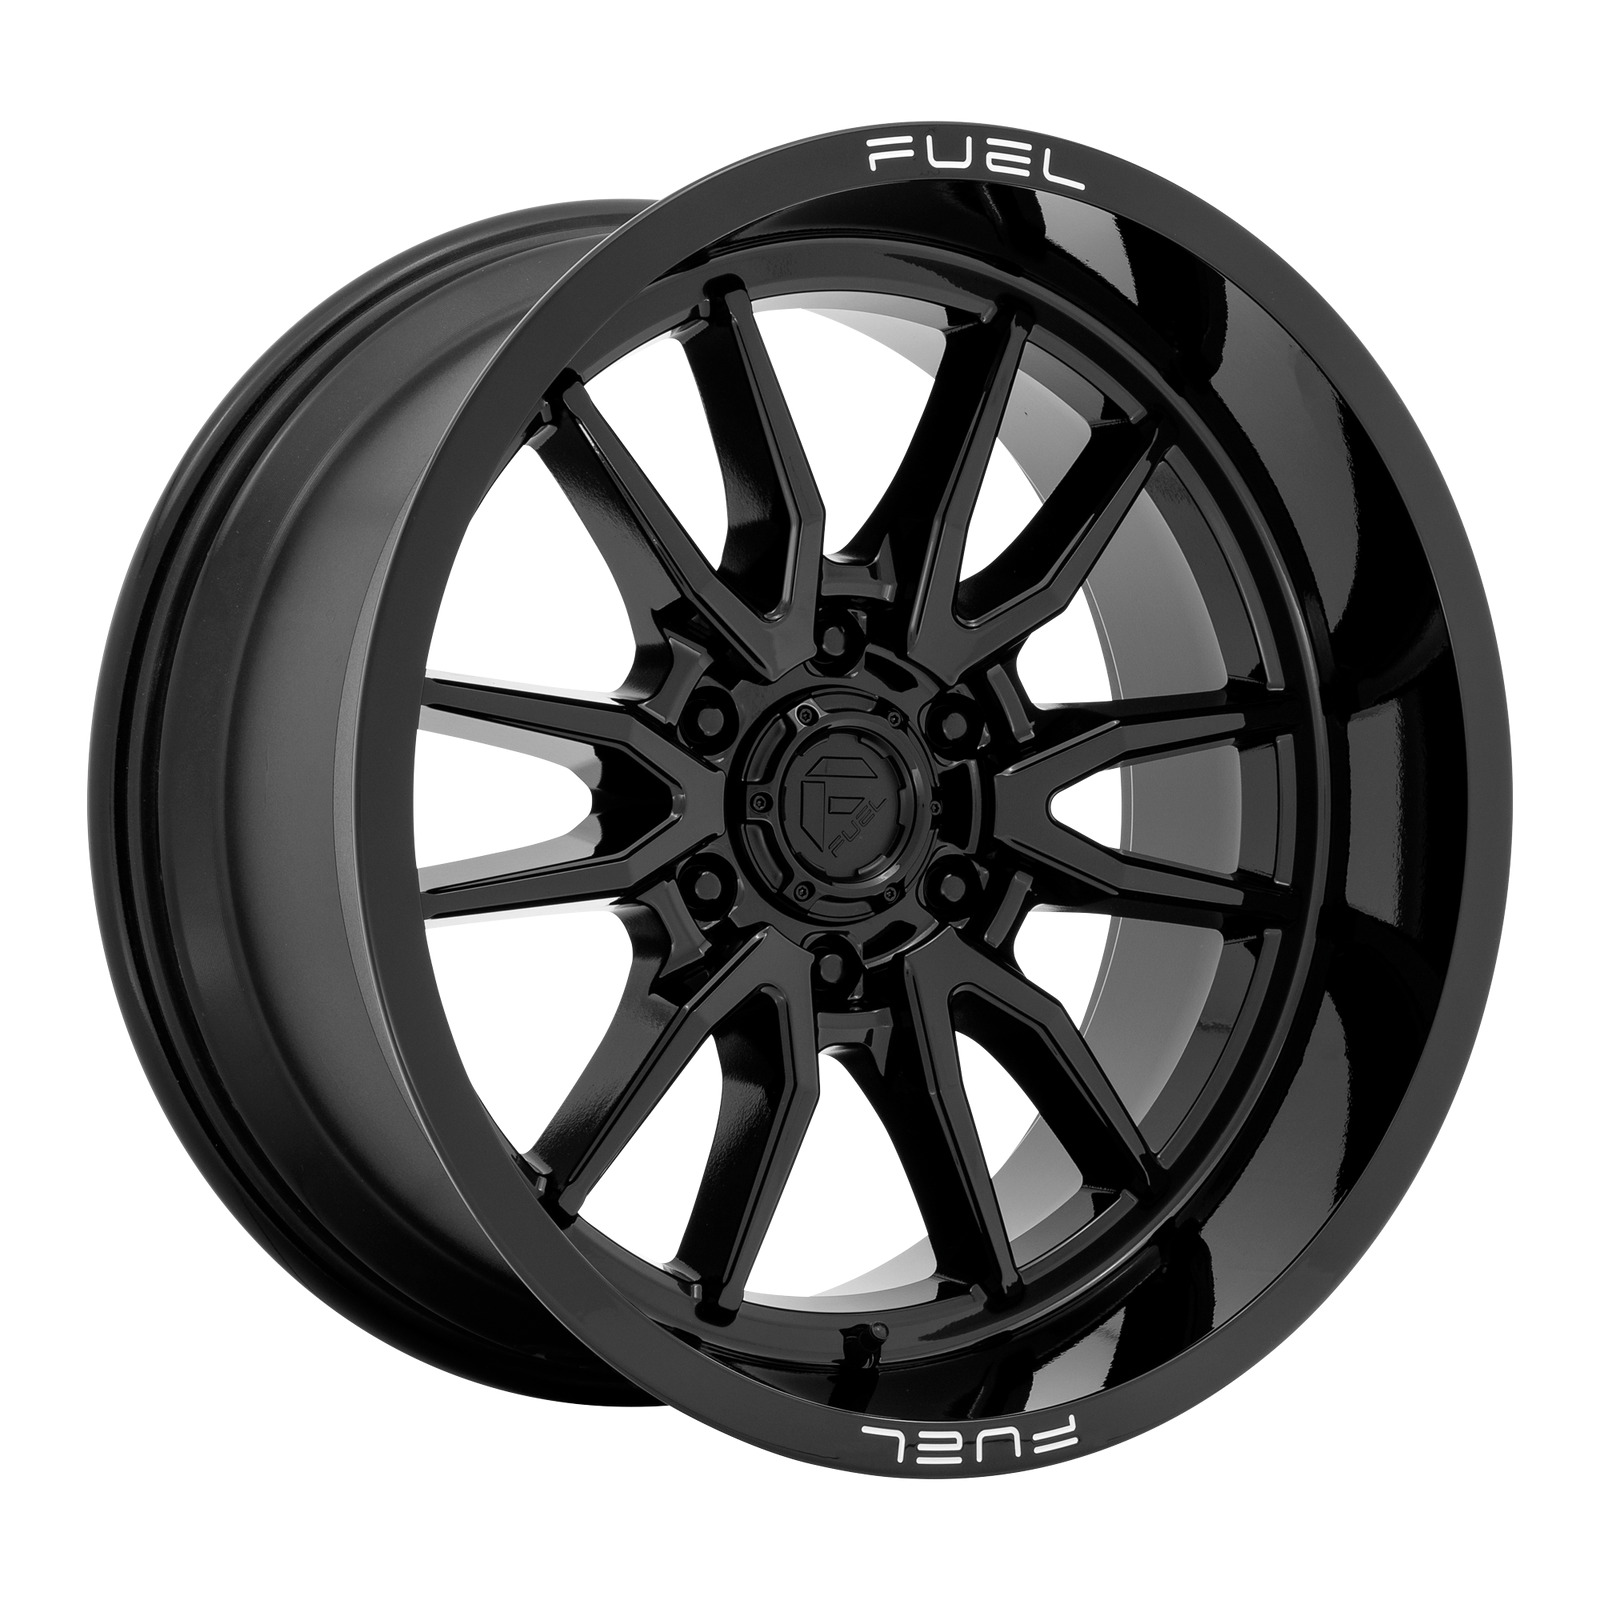 1 New 17X9 6X139.7 -12 Fuel 1PC D760 Clash Gloss Black Wheel/Rim